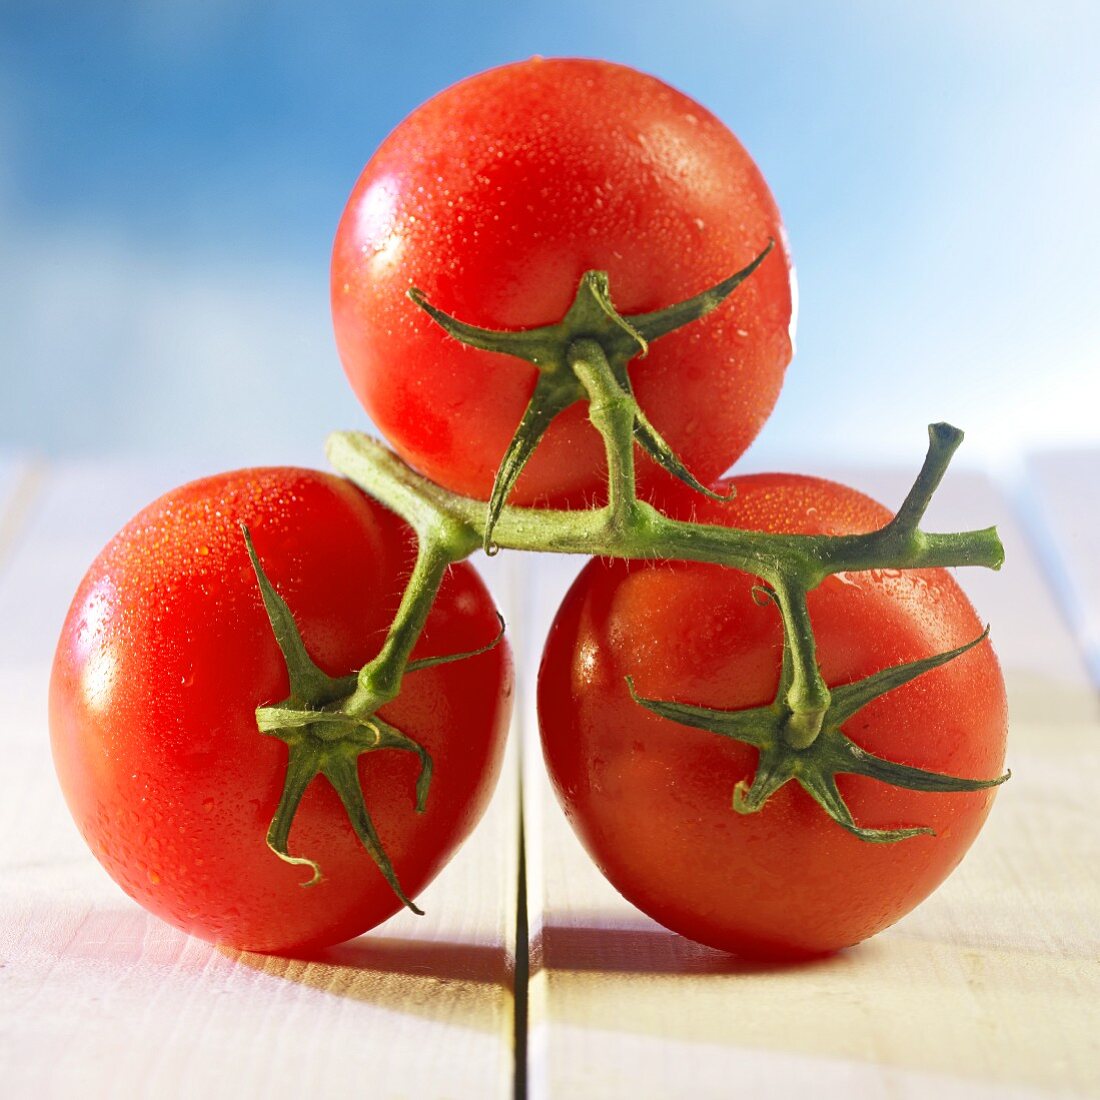 Three fresh, wet vine tomatoes